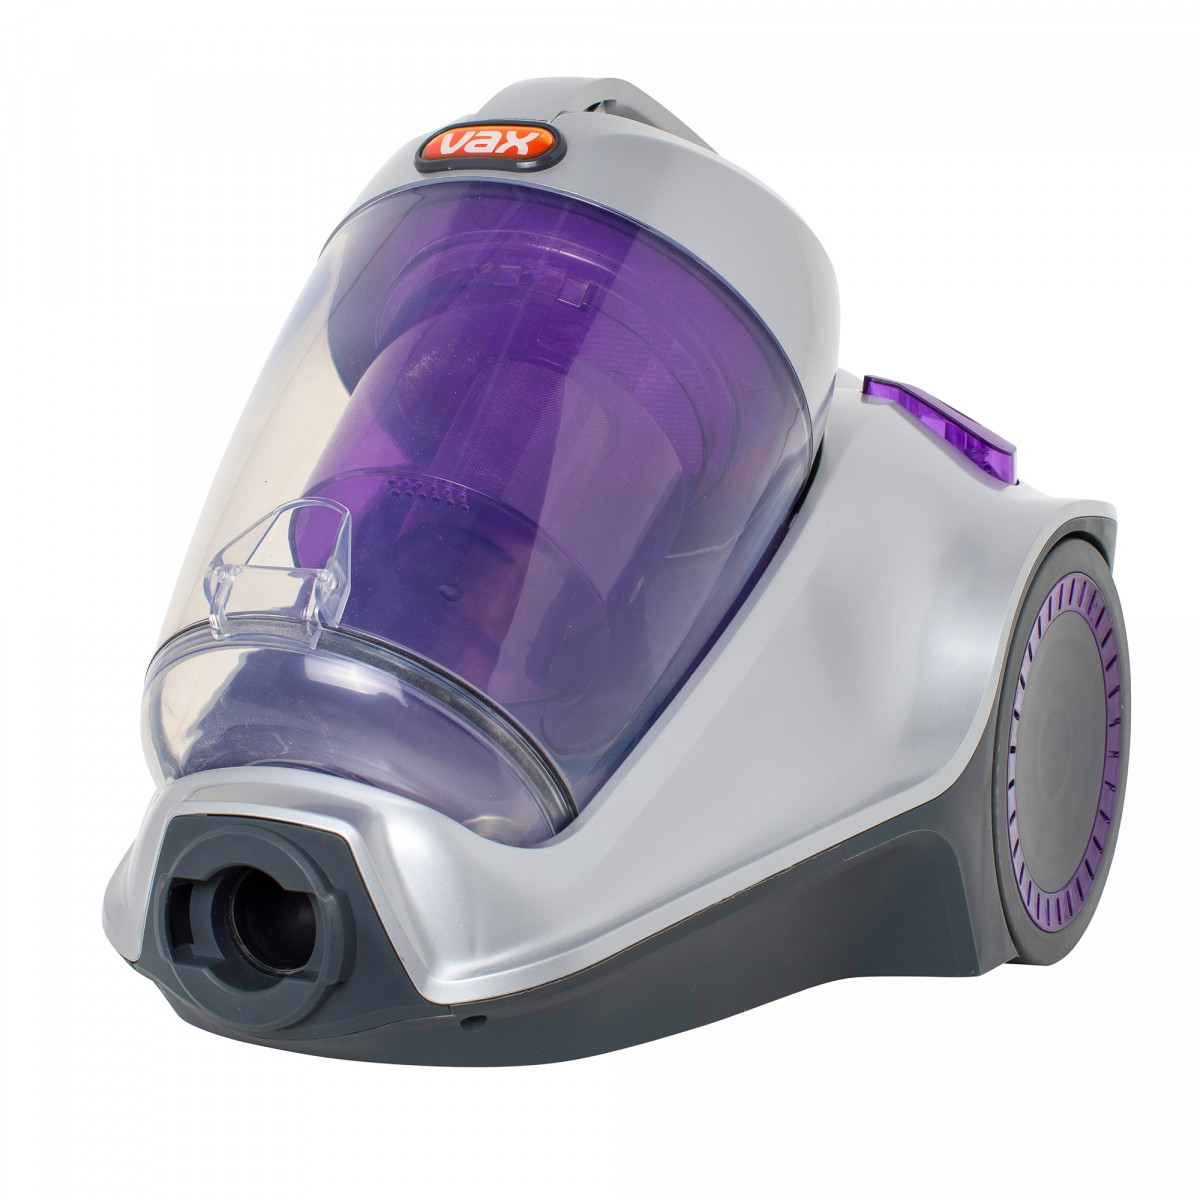 Пылесос Pet Vax моющий. Фиолетовый пылесос Вакс мощность. Пылесос Vax 420. Pet Vacuum. Пылесос pet pro